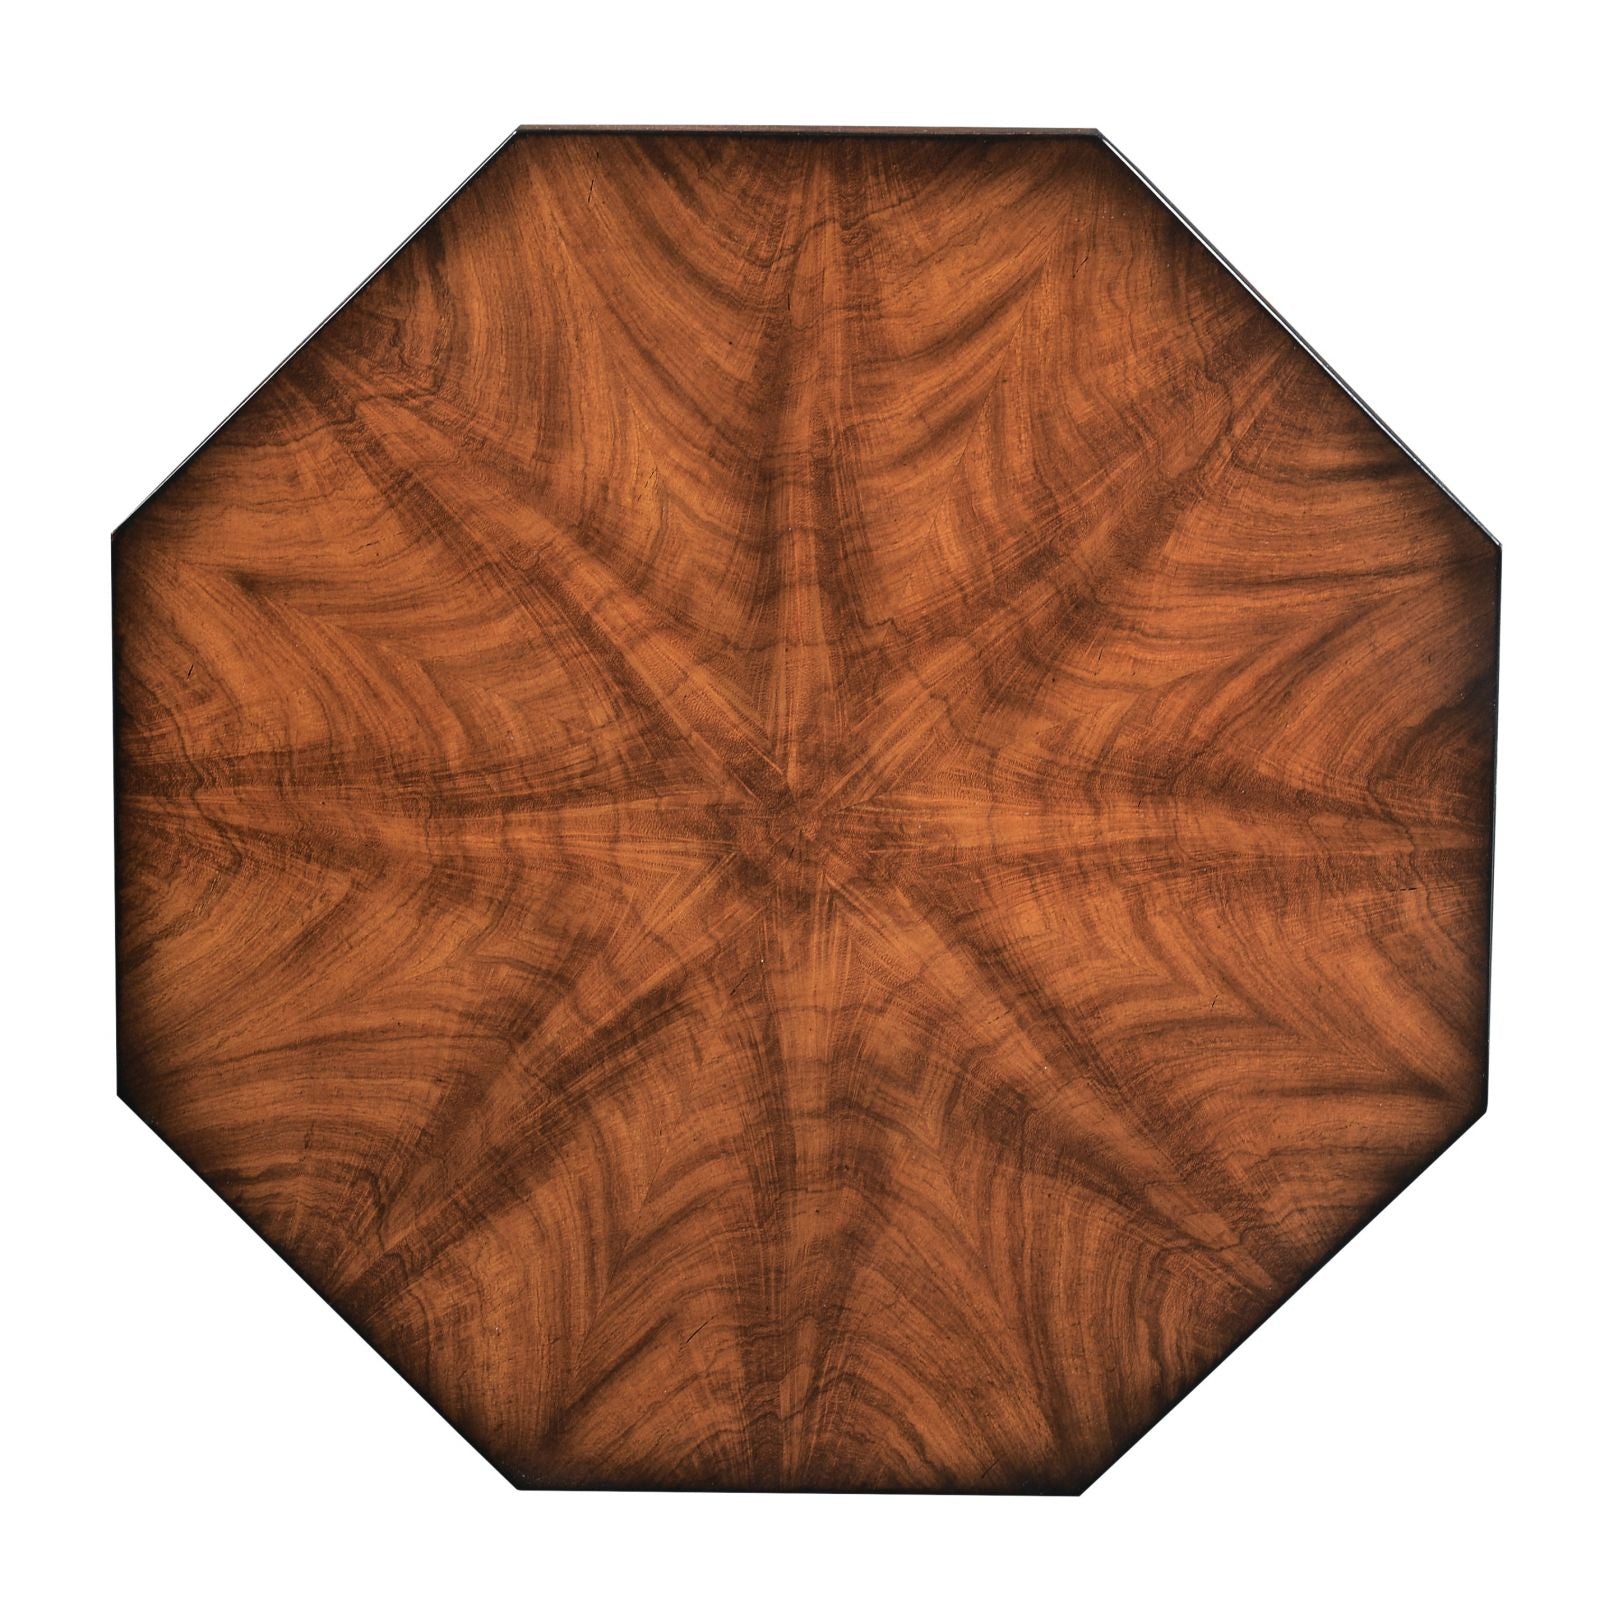 Octagonal wine table - Mahogany